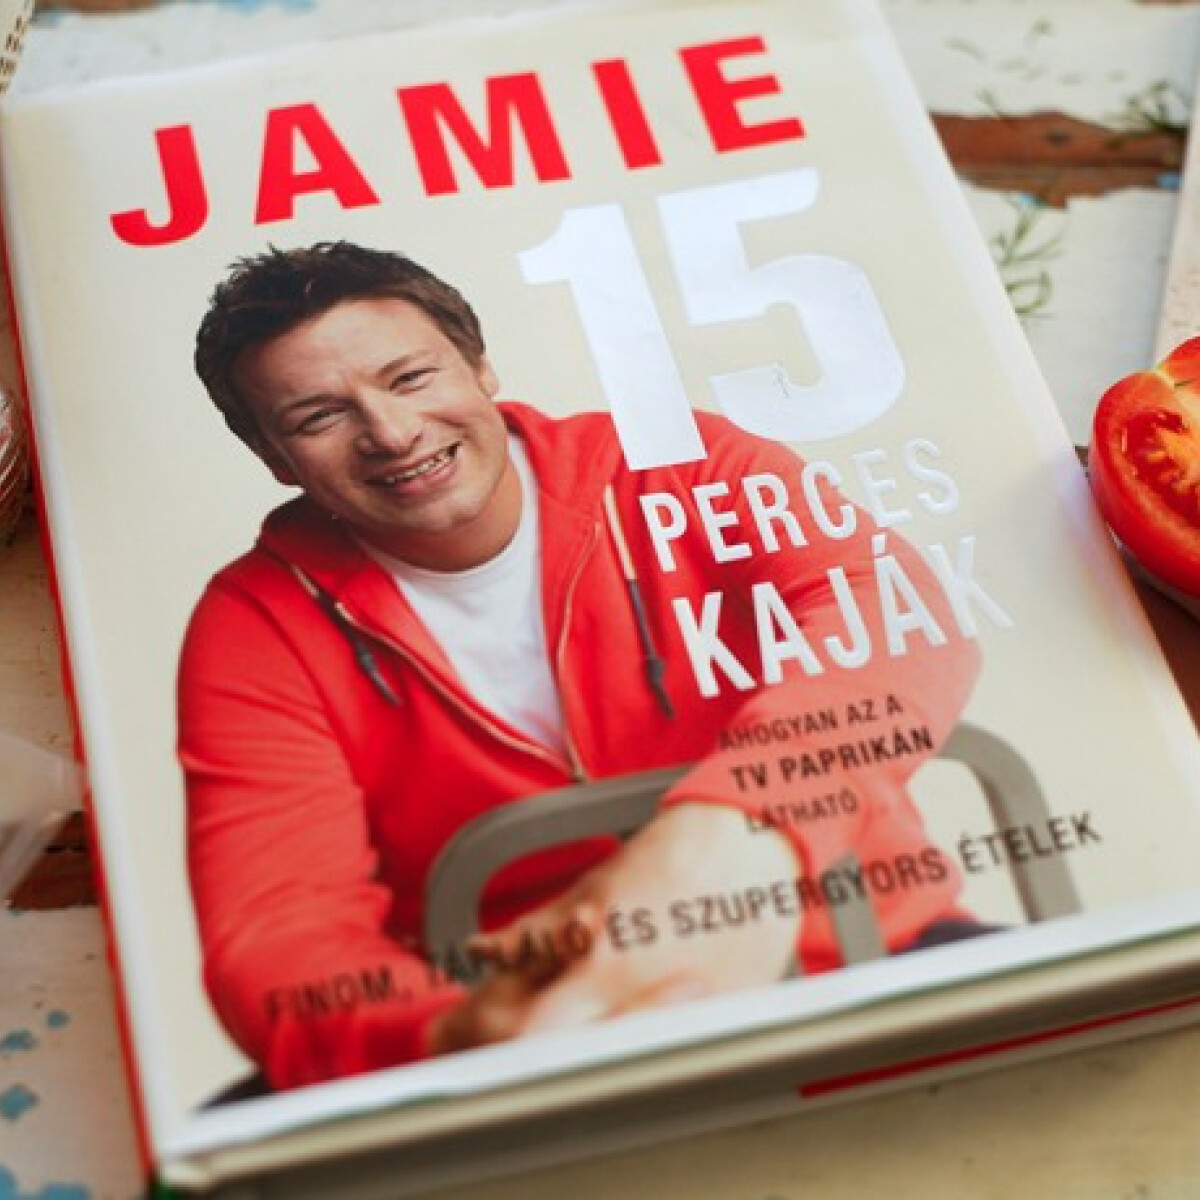 Nyerd meg Jamie legújabb szakácskönyvét!